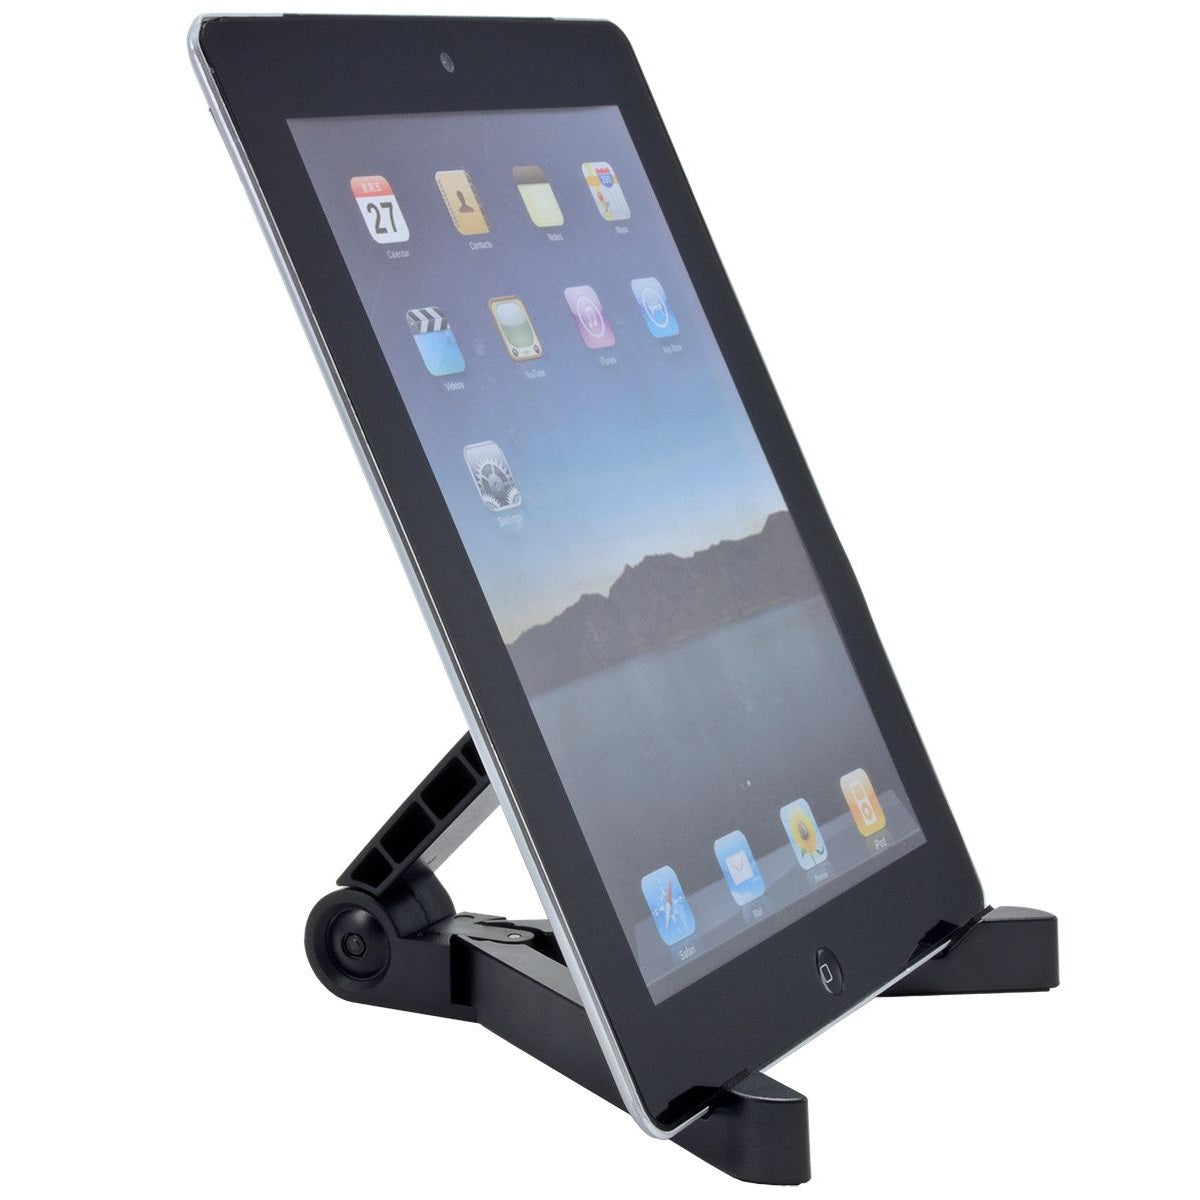 Soporte para tablet TriPro, soporte para monitor portátil ajustable y  plegable, 4.72 pulgadas de ancho, súper estable, compatible con tabletas de  7 a